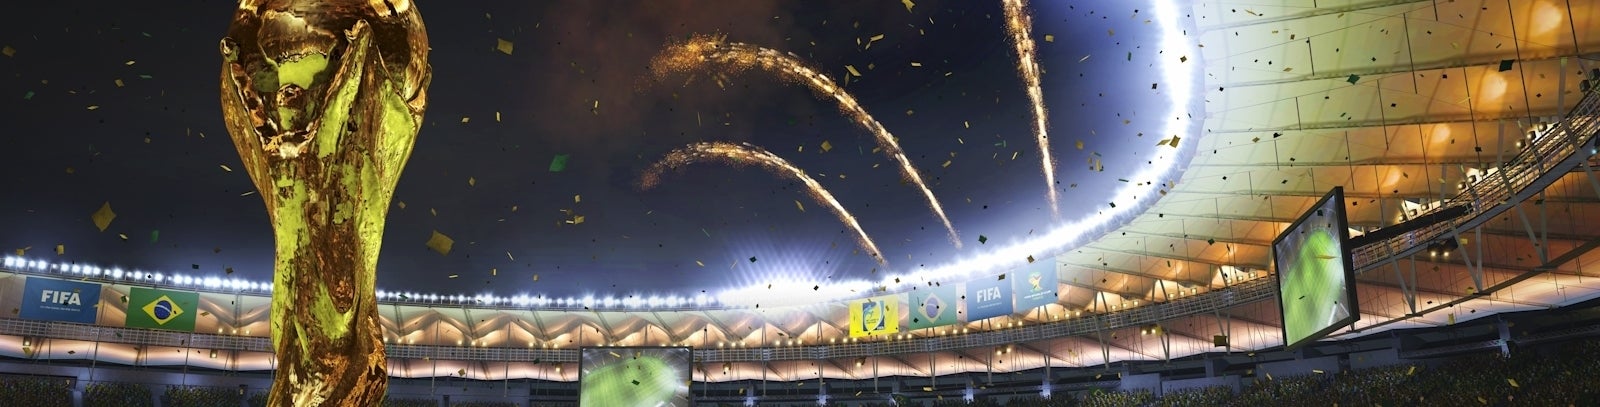 Immagine di Mondiali FIFA Brasile 2014 - articolo